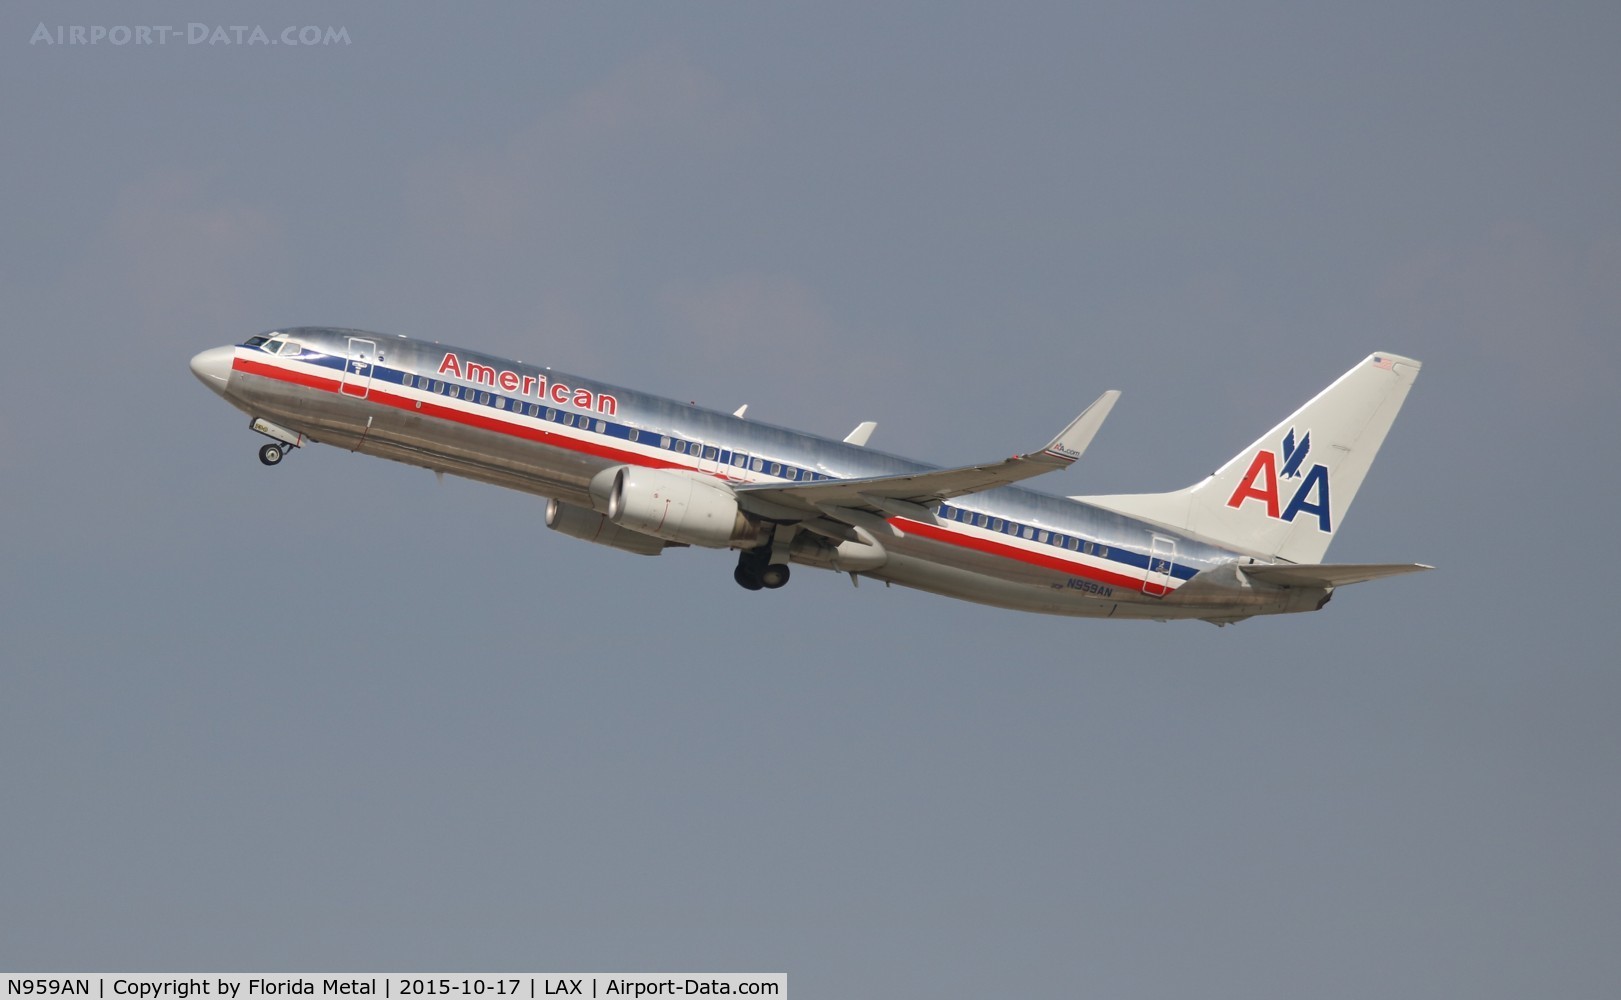 N959AN, 2001 Boeing 737-823 C/N 30828, American